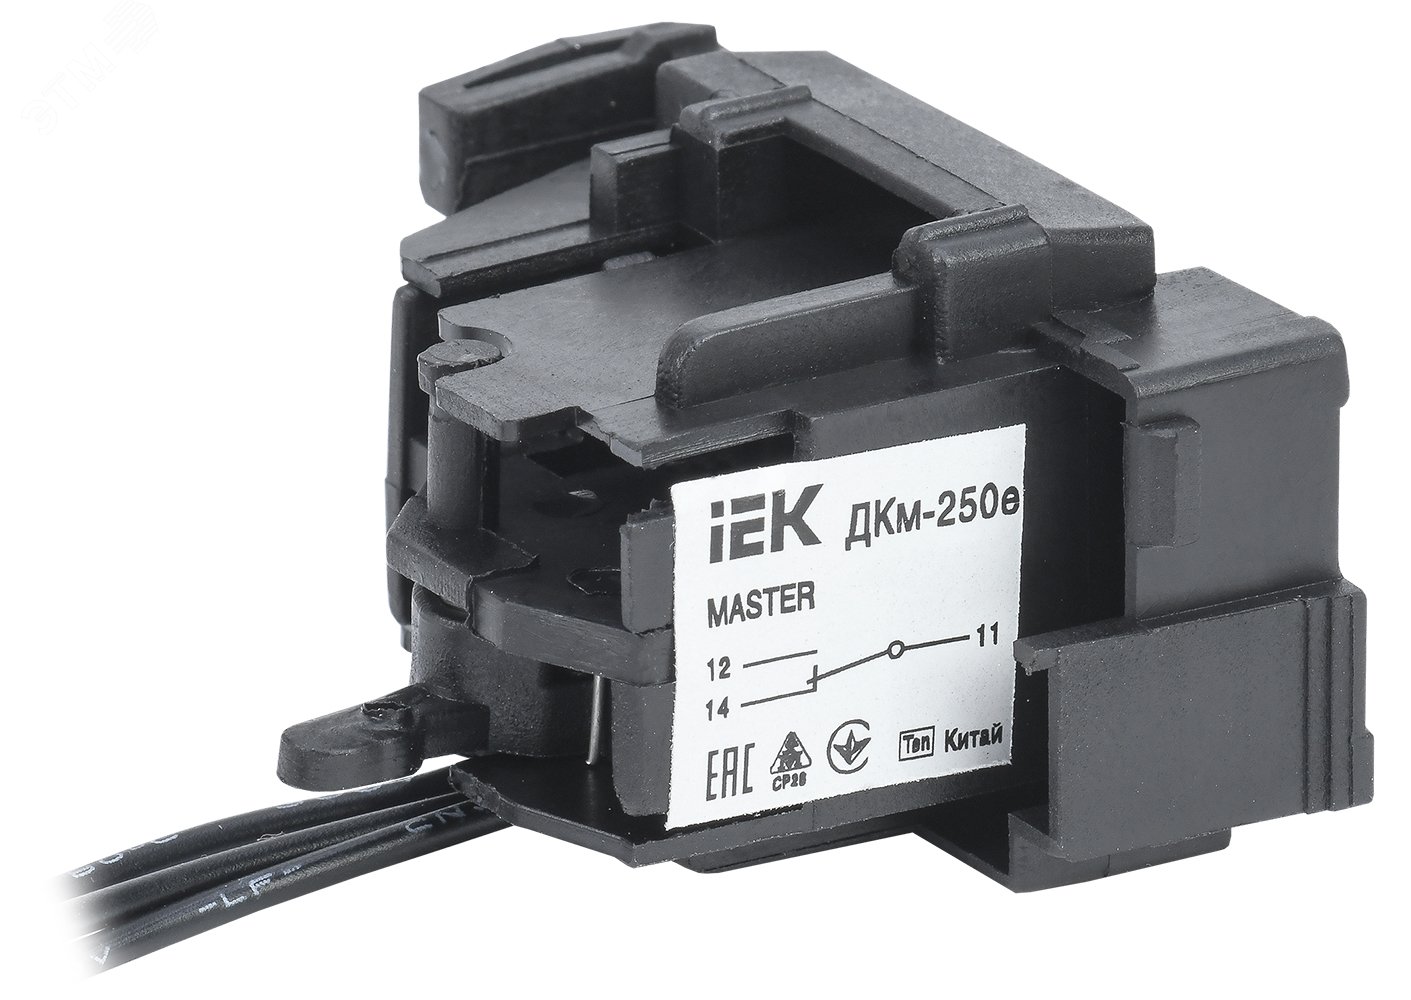 Контакт дополнительный ДКм-250е (ДКм-35) для ВА88-35 MASTER с электронным расцепителем SVA31D-DK-1-02 IEK